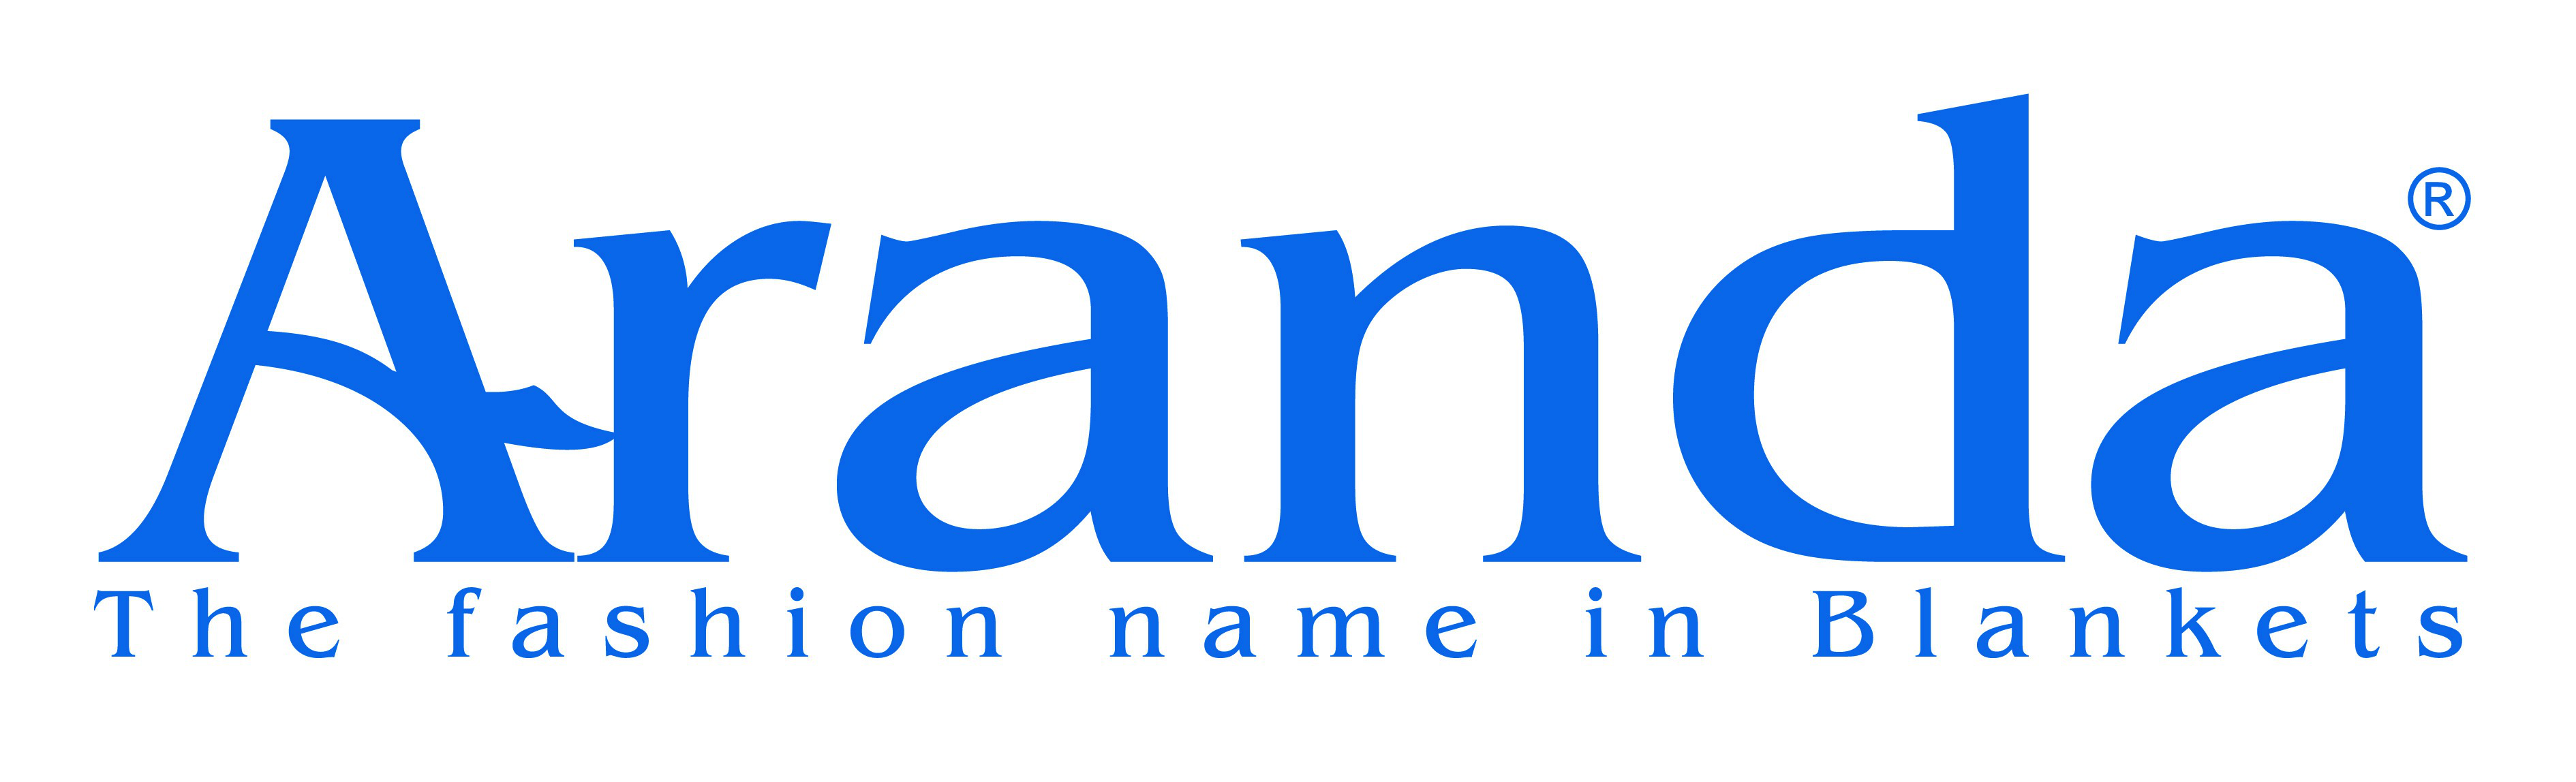 Aranda Logo